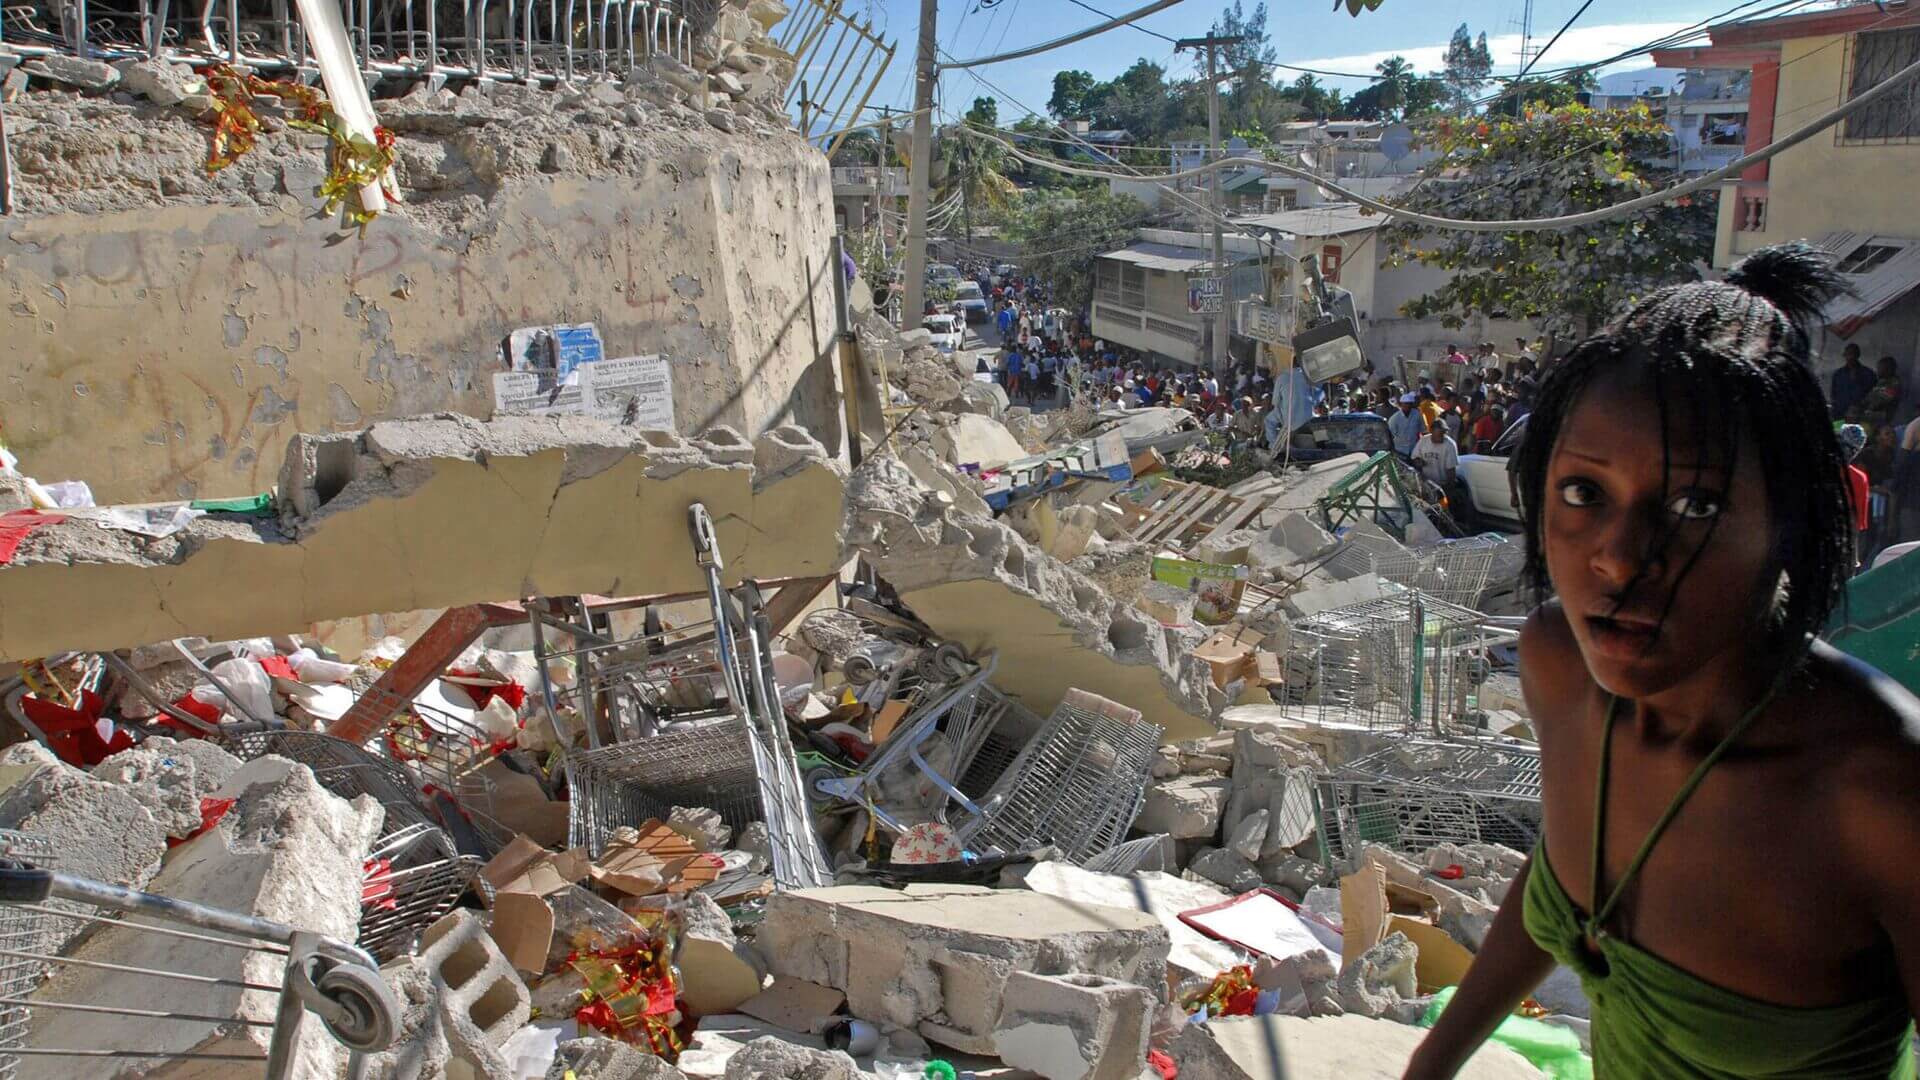 Сила и последствия землетрясений. В январе 2010 года в результате катастрофы на Гаити погибло 316 000 человек. Фото.